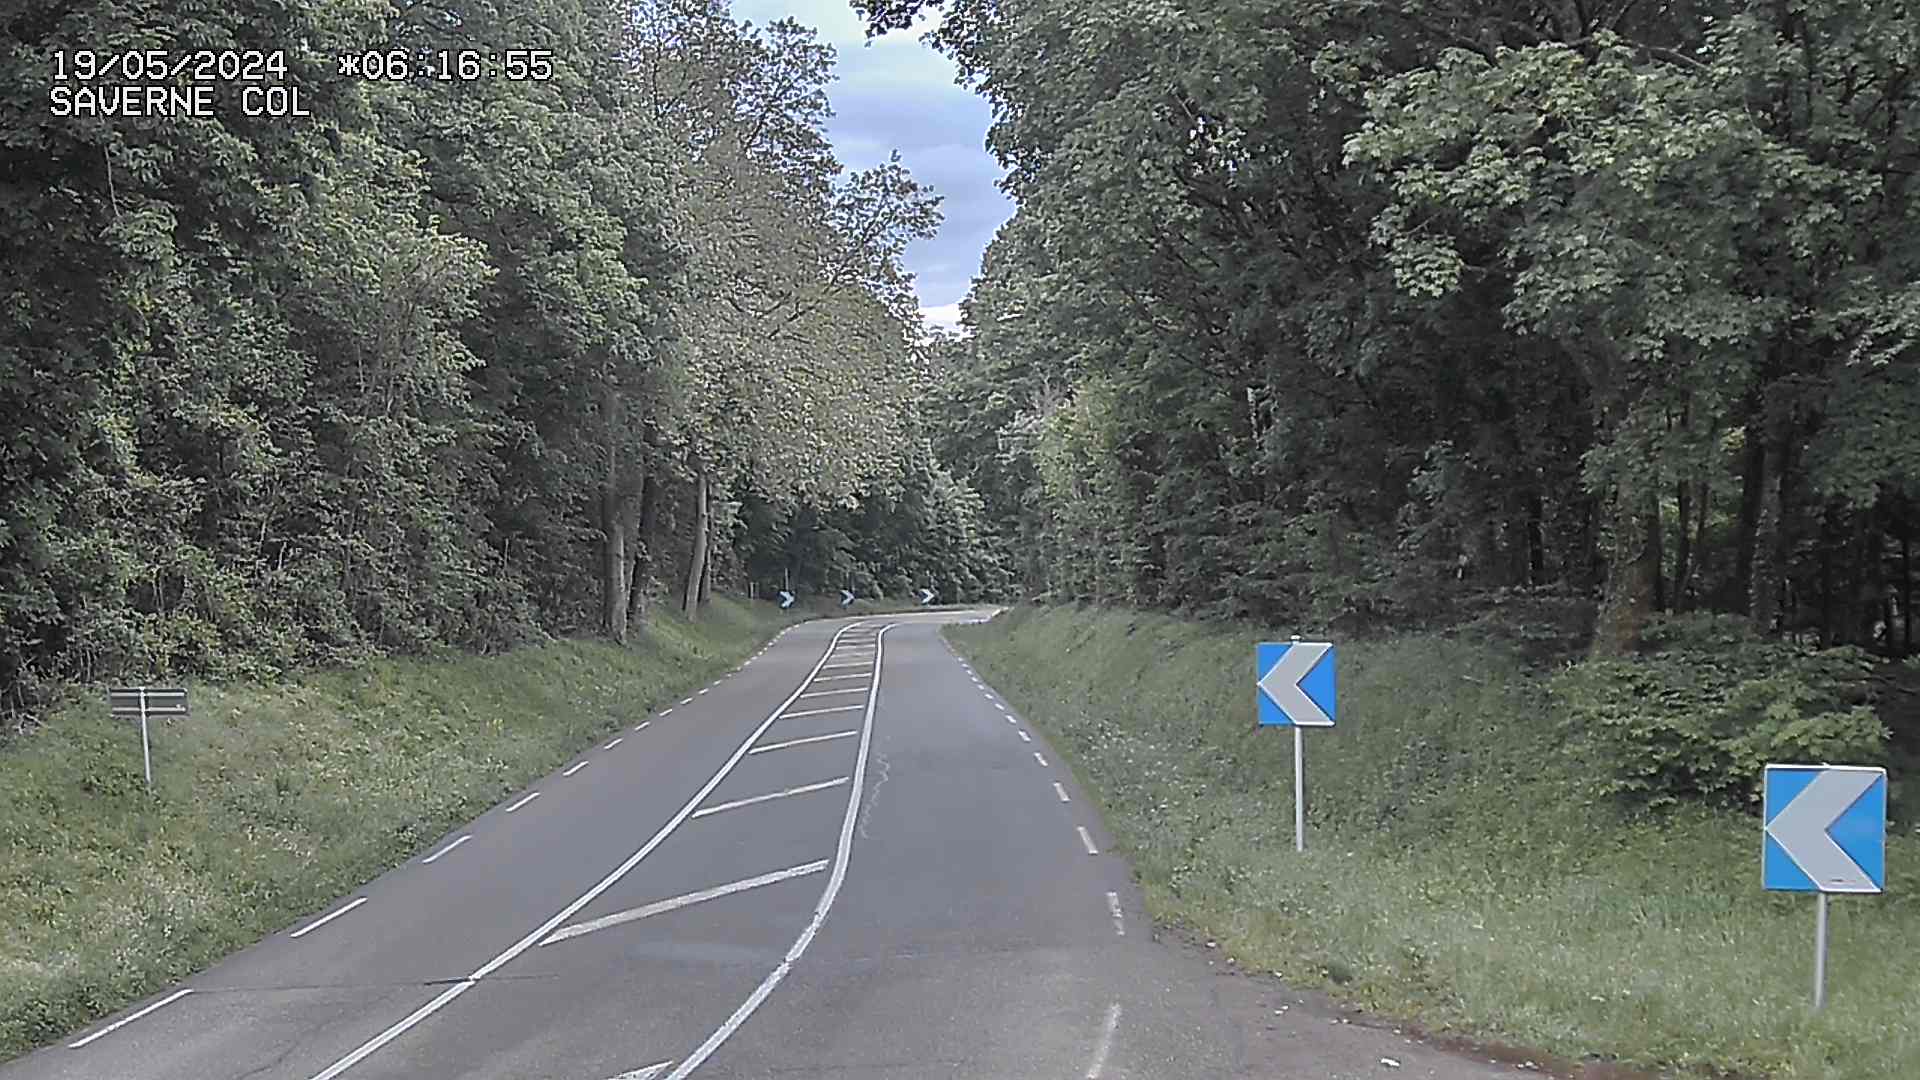 <h2>Webcam sur le col de Saverne sur la D1004. Vue orientée vers Saverne dans le massif des Vosges</h2>